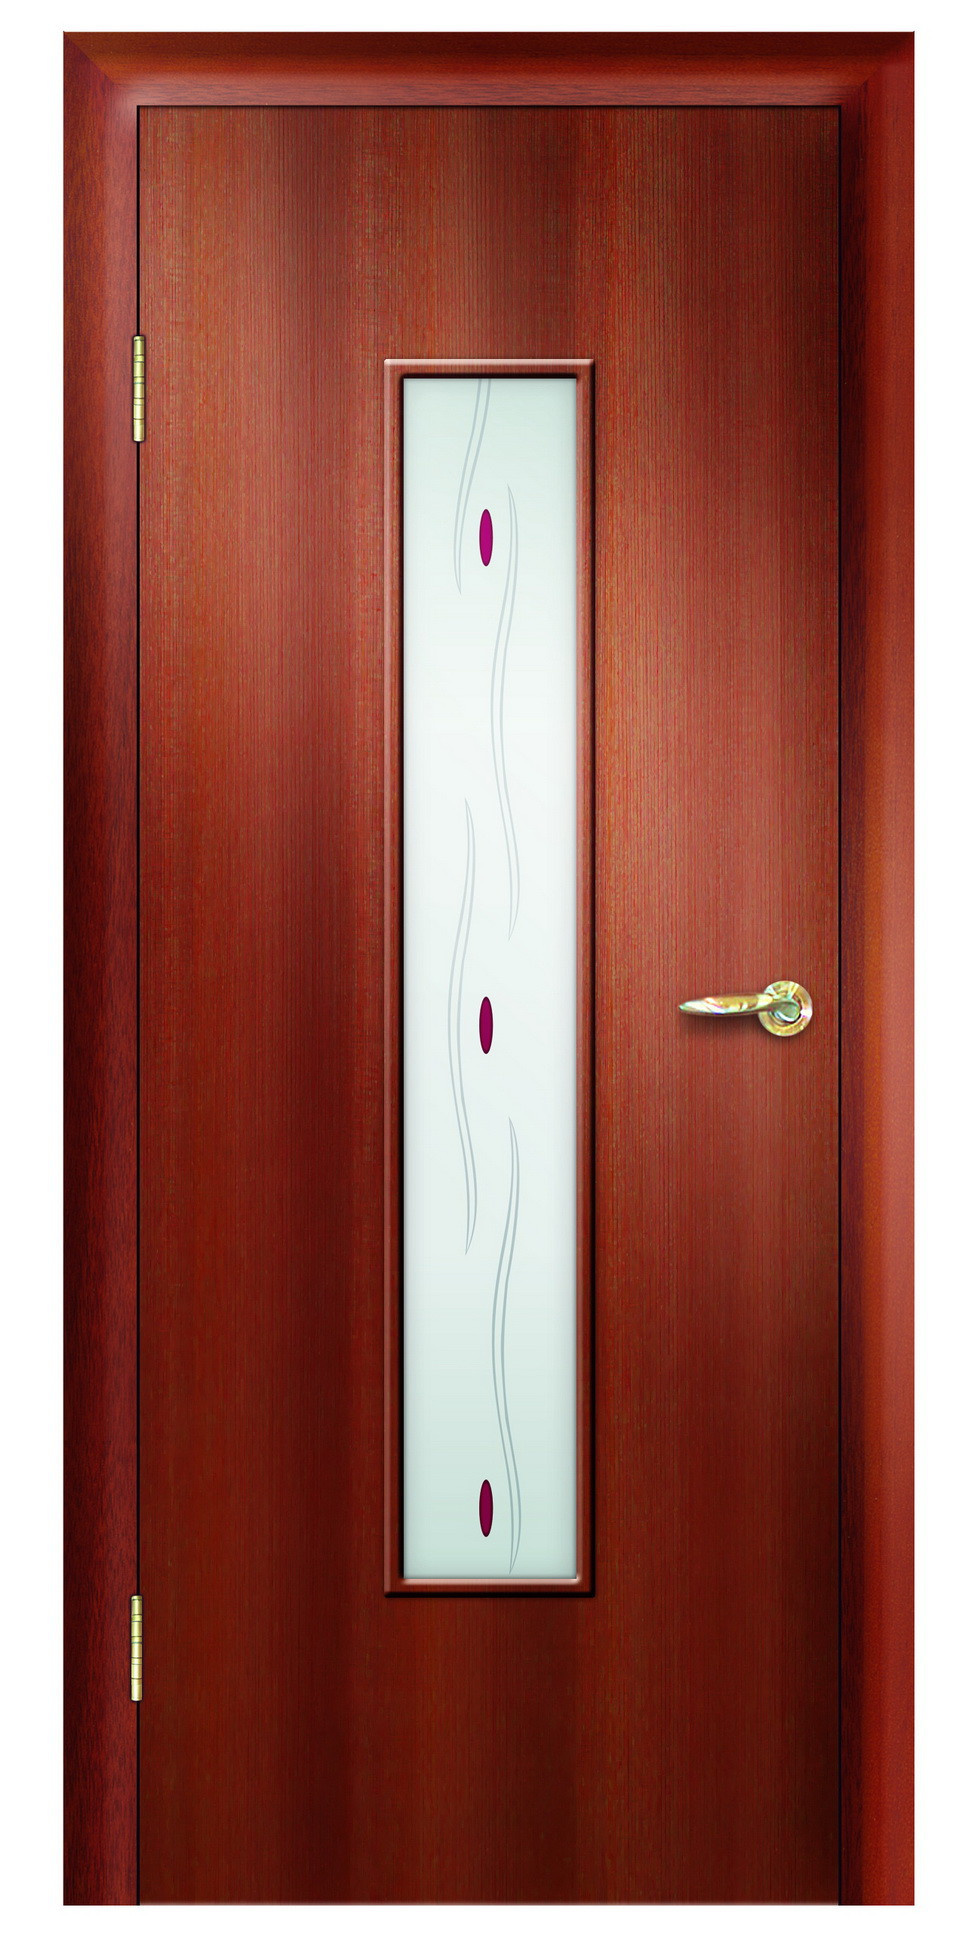 Дверная Линия Межкомнатная дверь ПО-102 Свет, арт. 15729 - фото №1